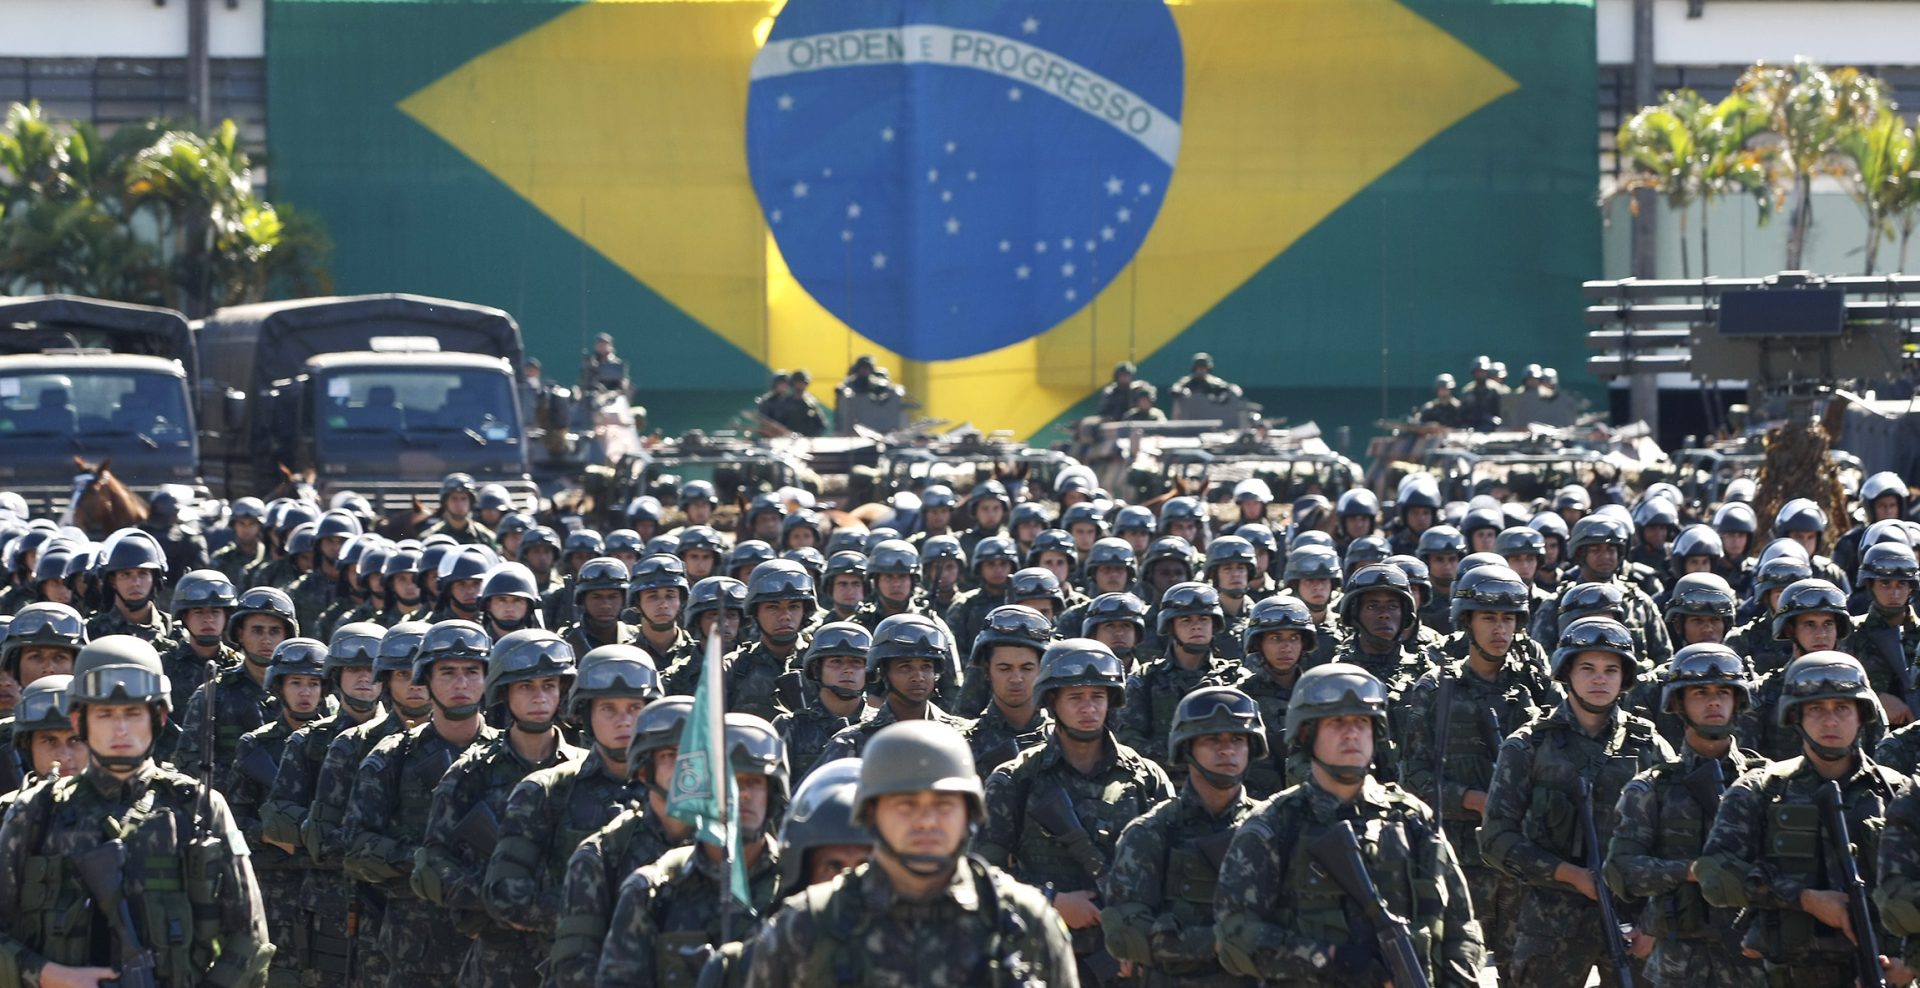 Brasil. Militares homenagearam ditadura militar